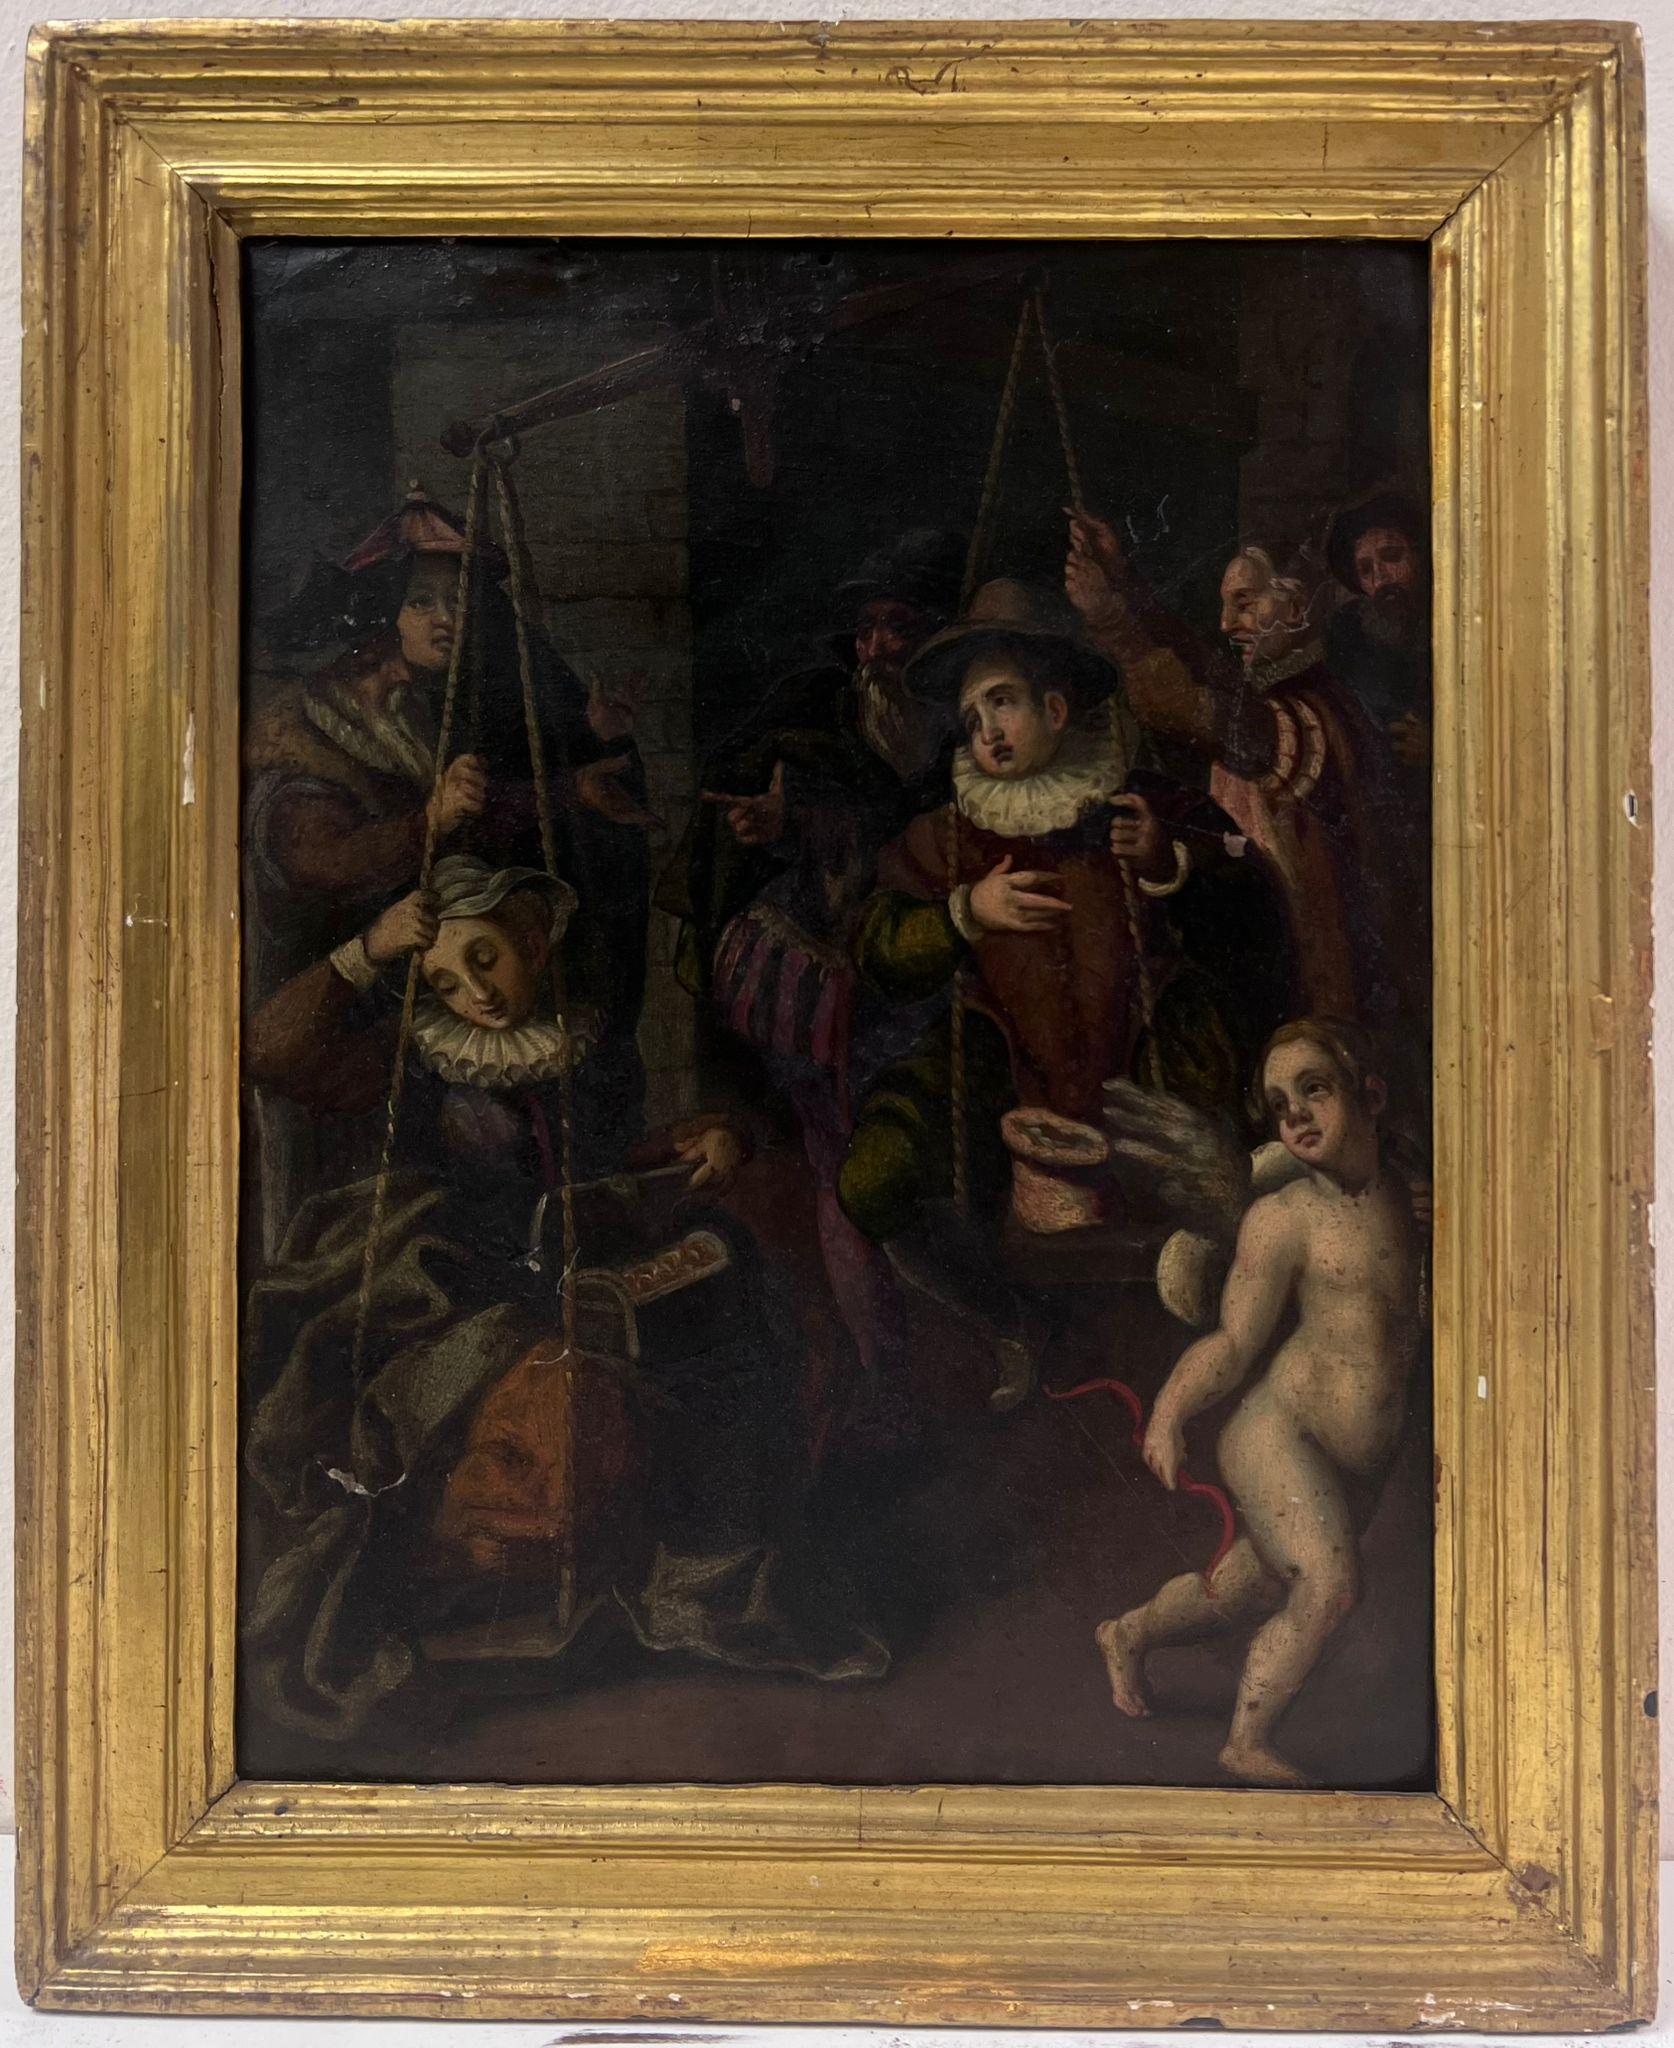 1700's paintings